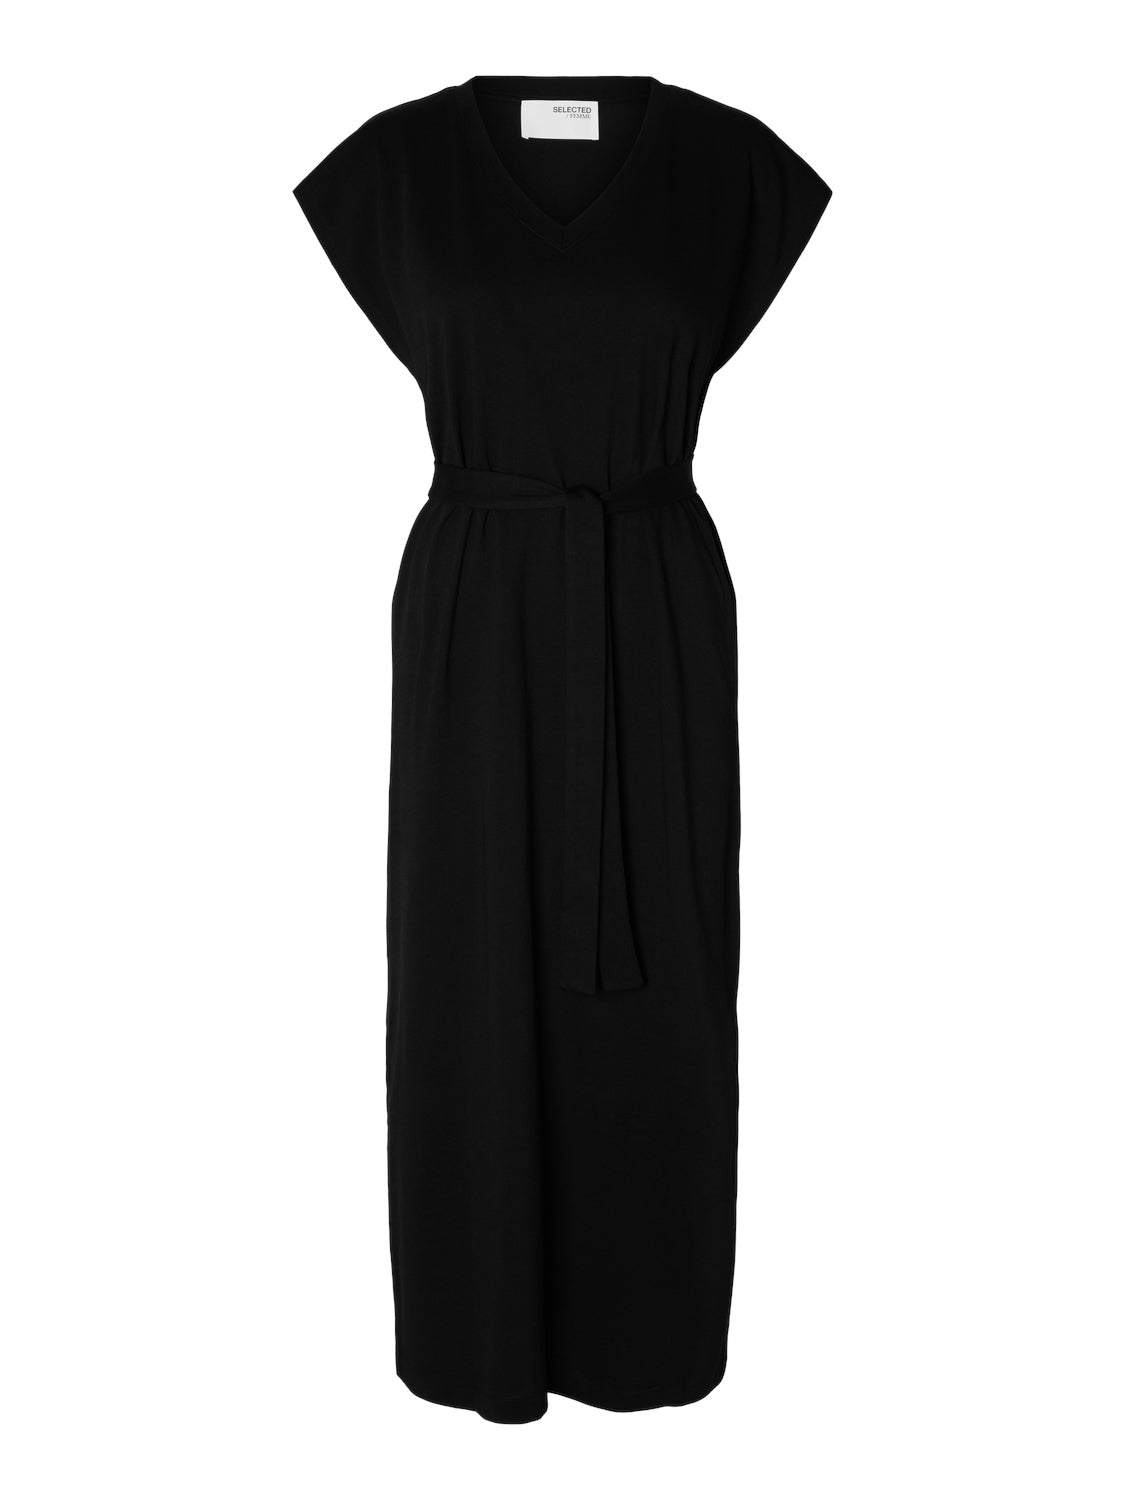 Selected Femme "Essential" V-Neck Ankle Dress schwarz